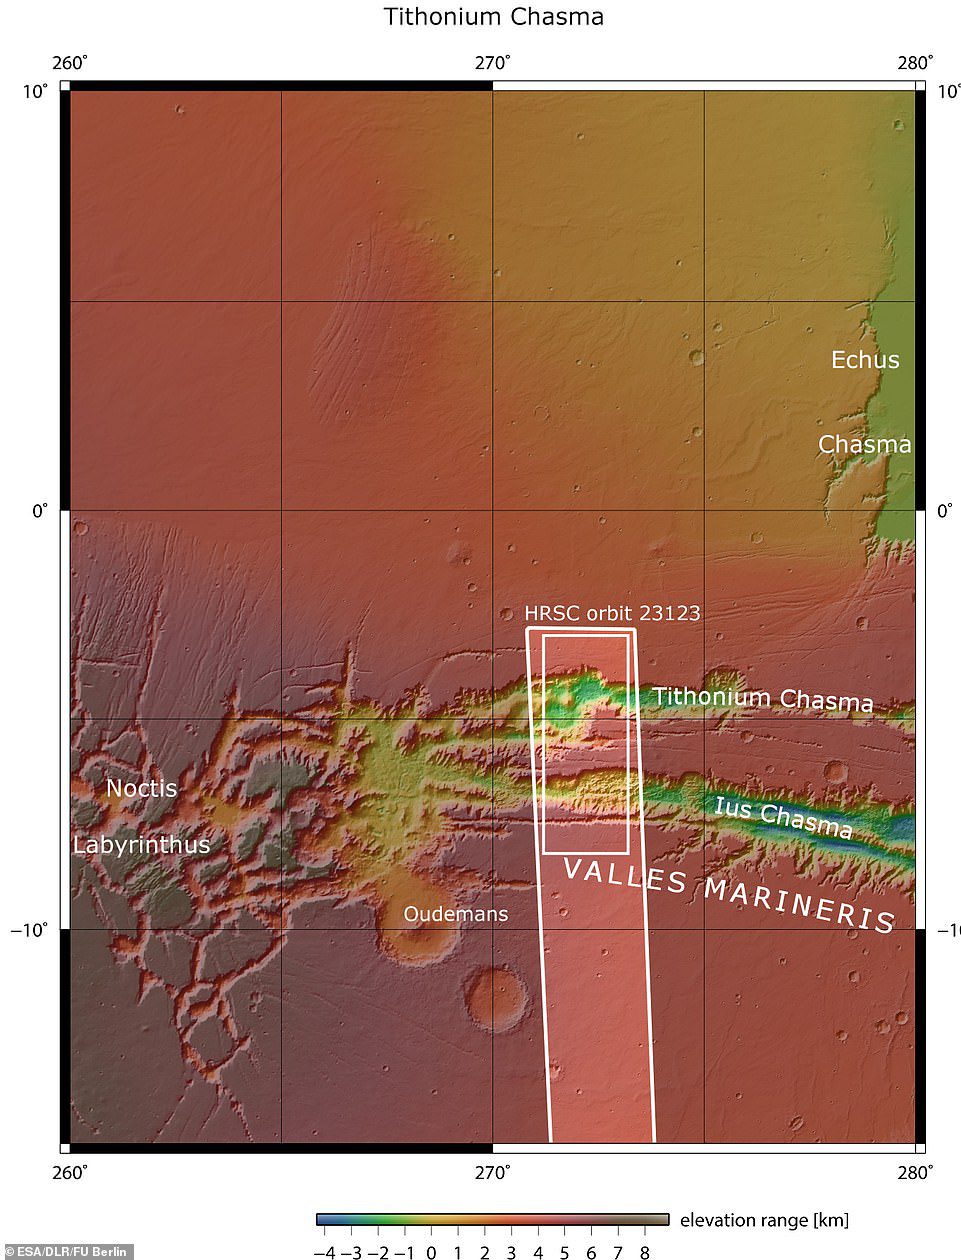 Lus y Tithonium Chasmata se ven arriba.  El área delineada en el cuadro blanco oscuro indica el área fotografiada por la cámara estéreo de alta resolución Mars Express el 21 de abril de 2022 durante la órbita.